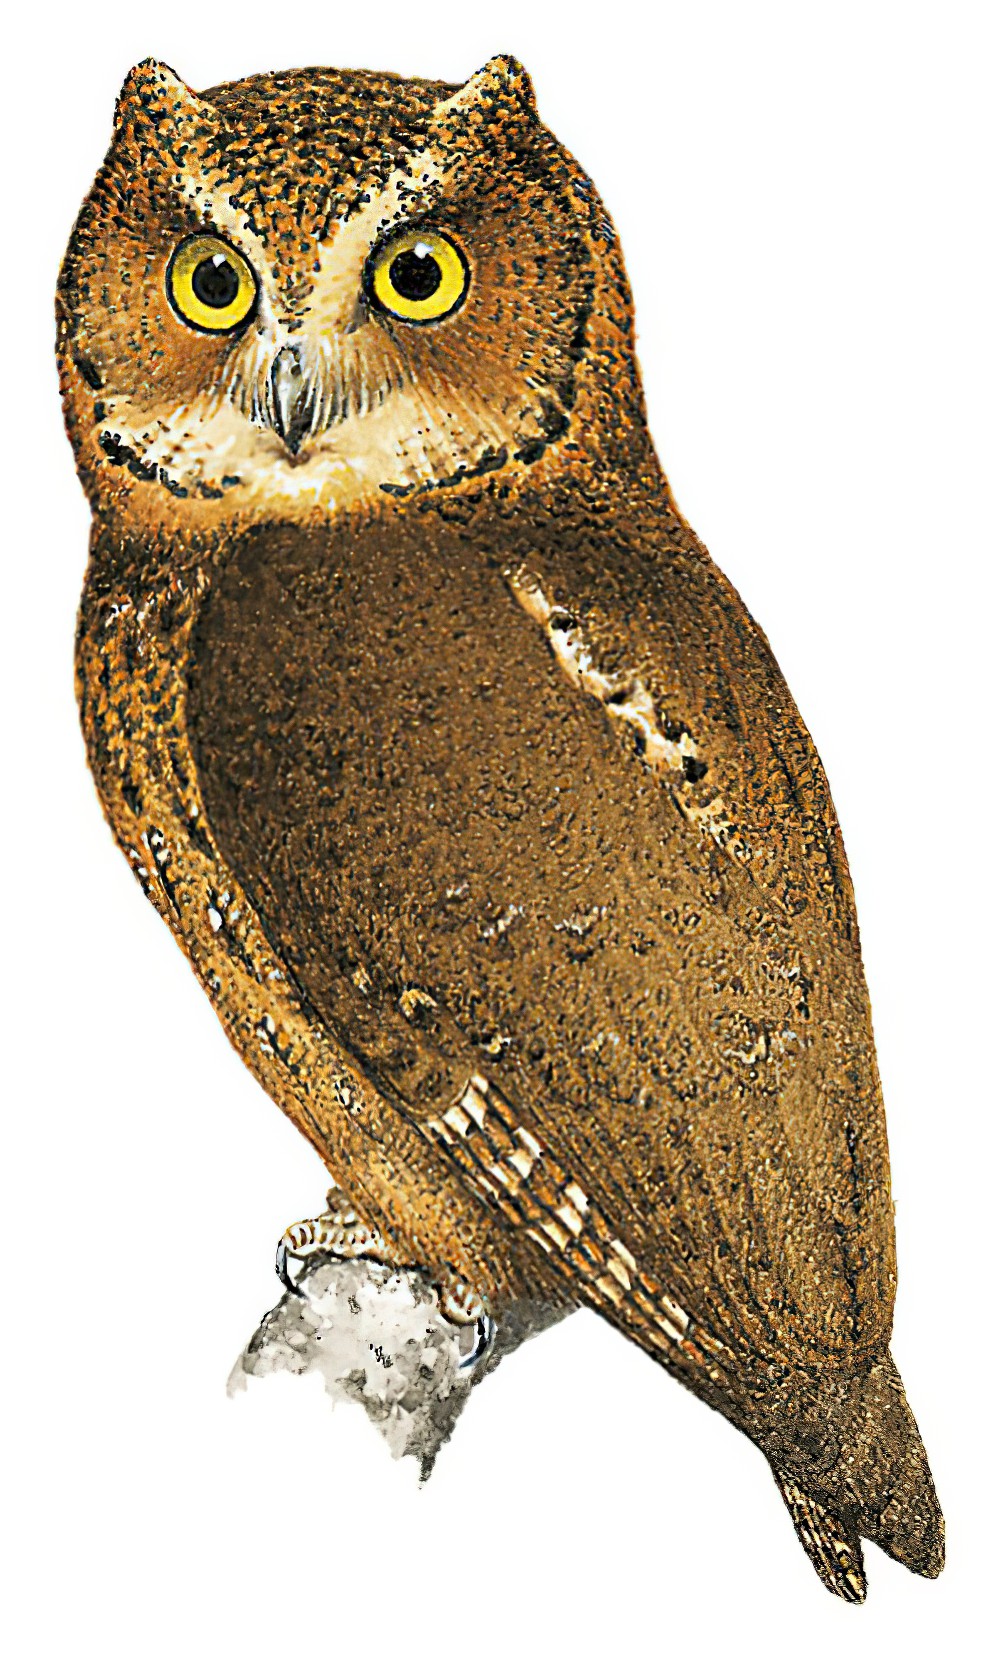 Mindoro Scops-Owl / Otus mindorensis